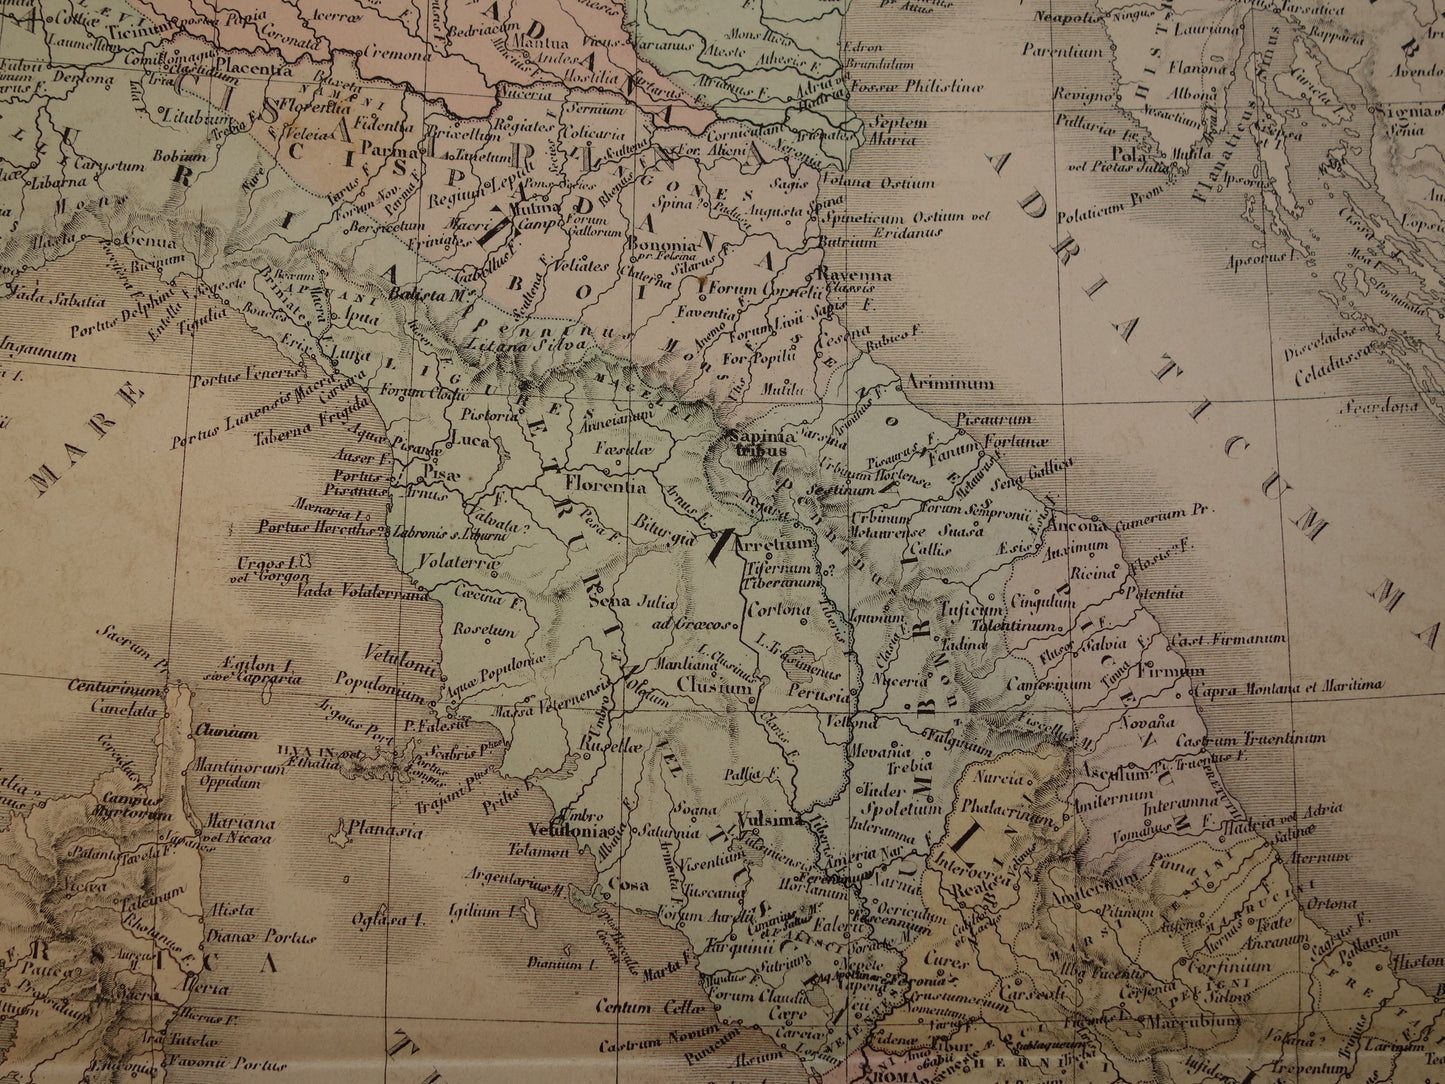 ITALIE grote oude Franse kaart van Italië in de klassieke oudheid uit 1875 originele antieke handgekleurde landkaart